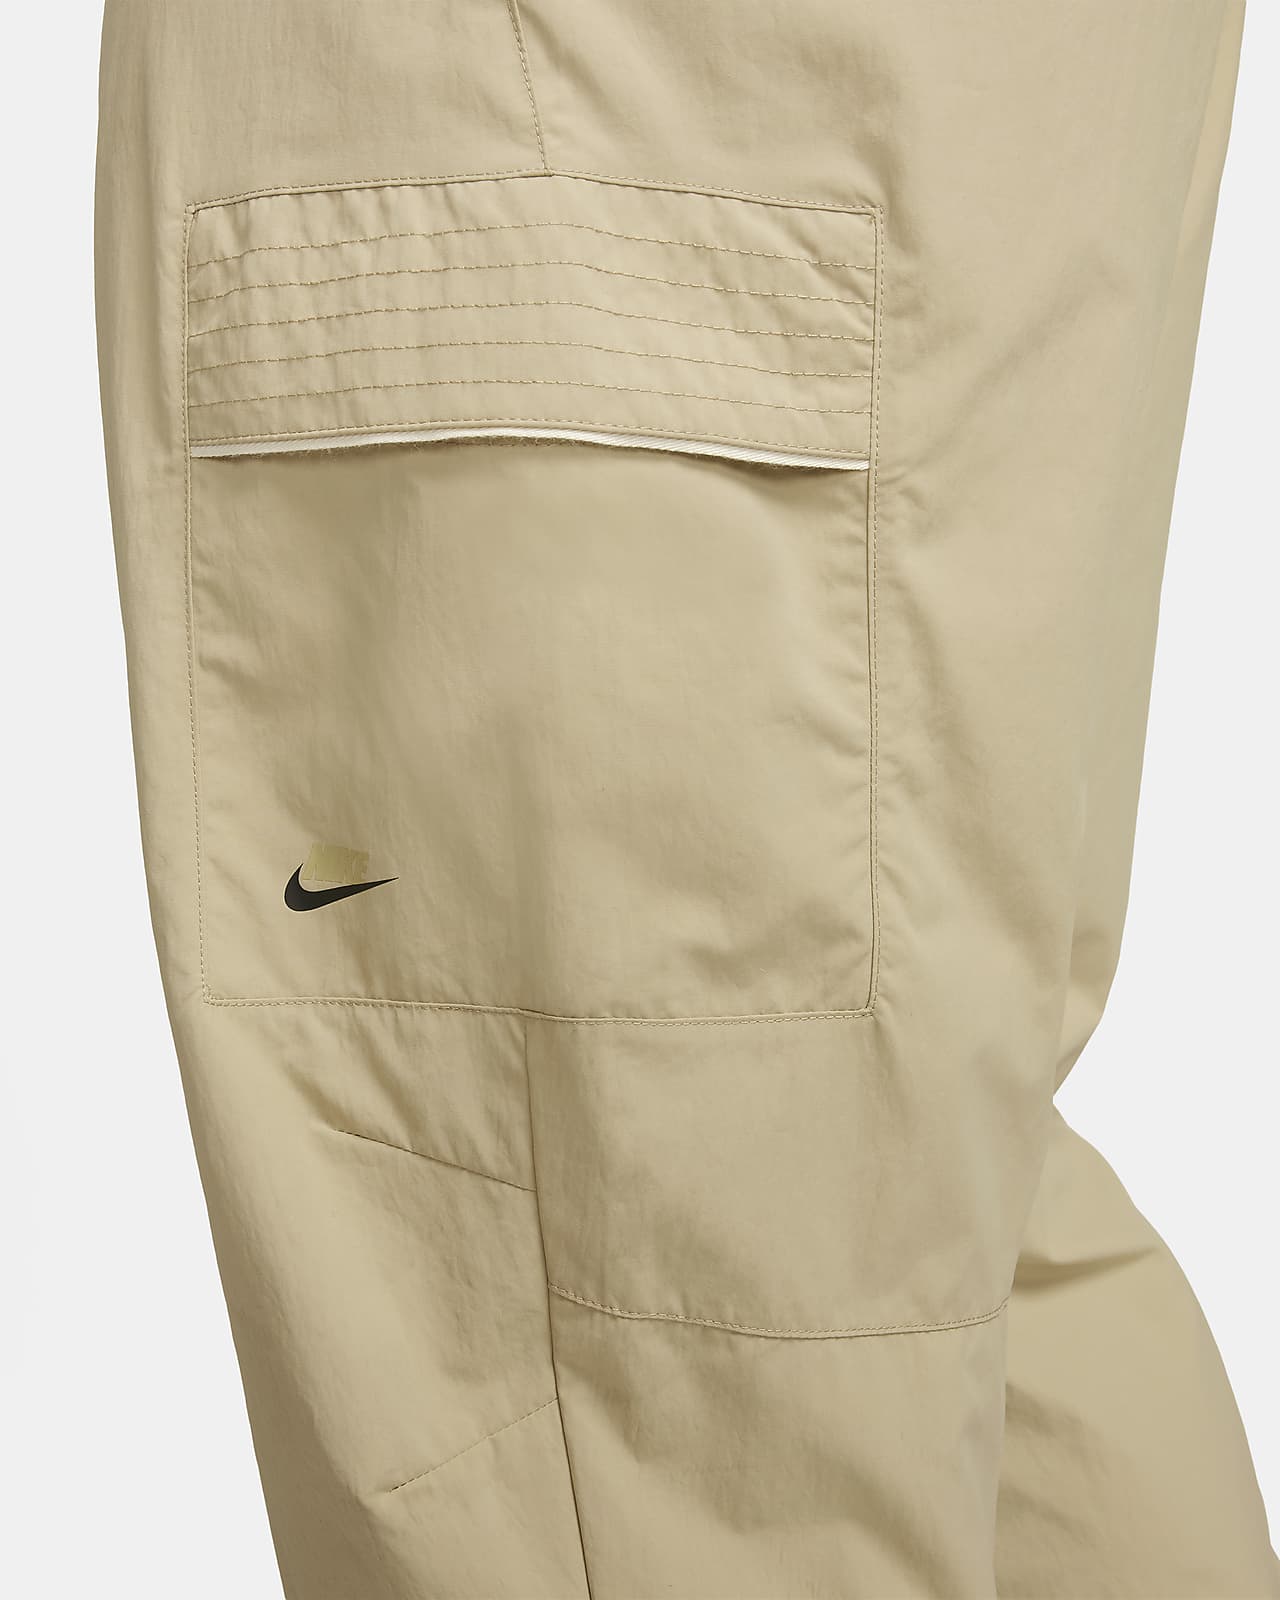 Nike Sportswear Button Down Pants Size M